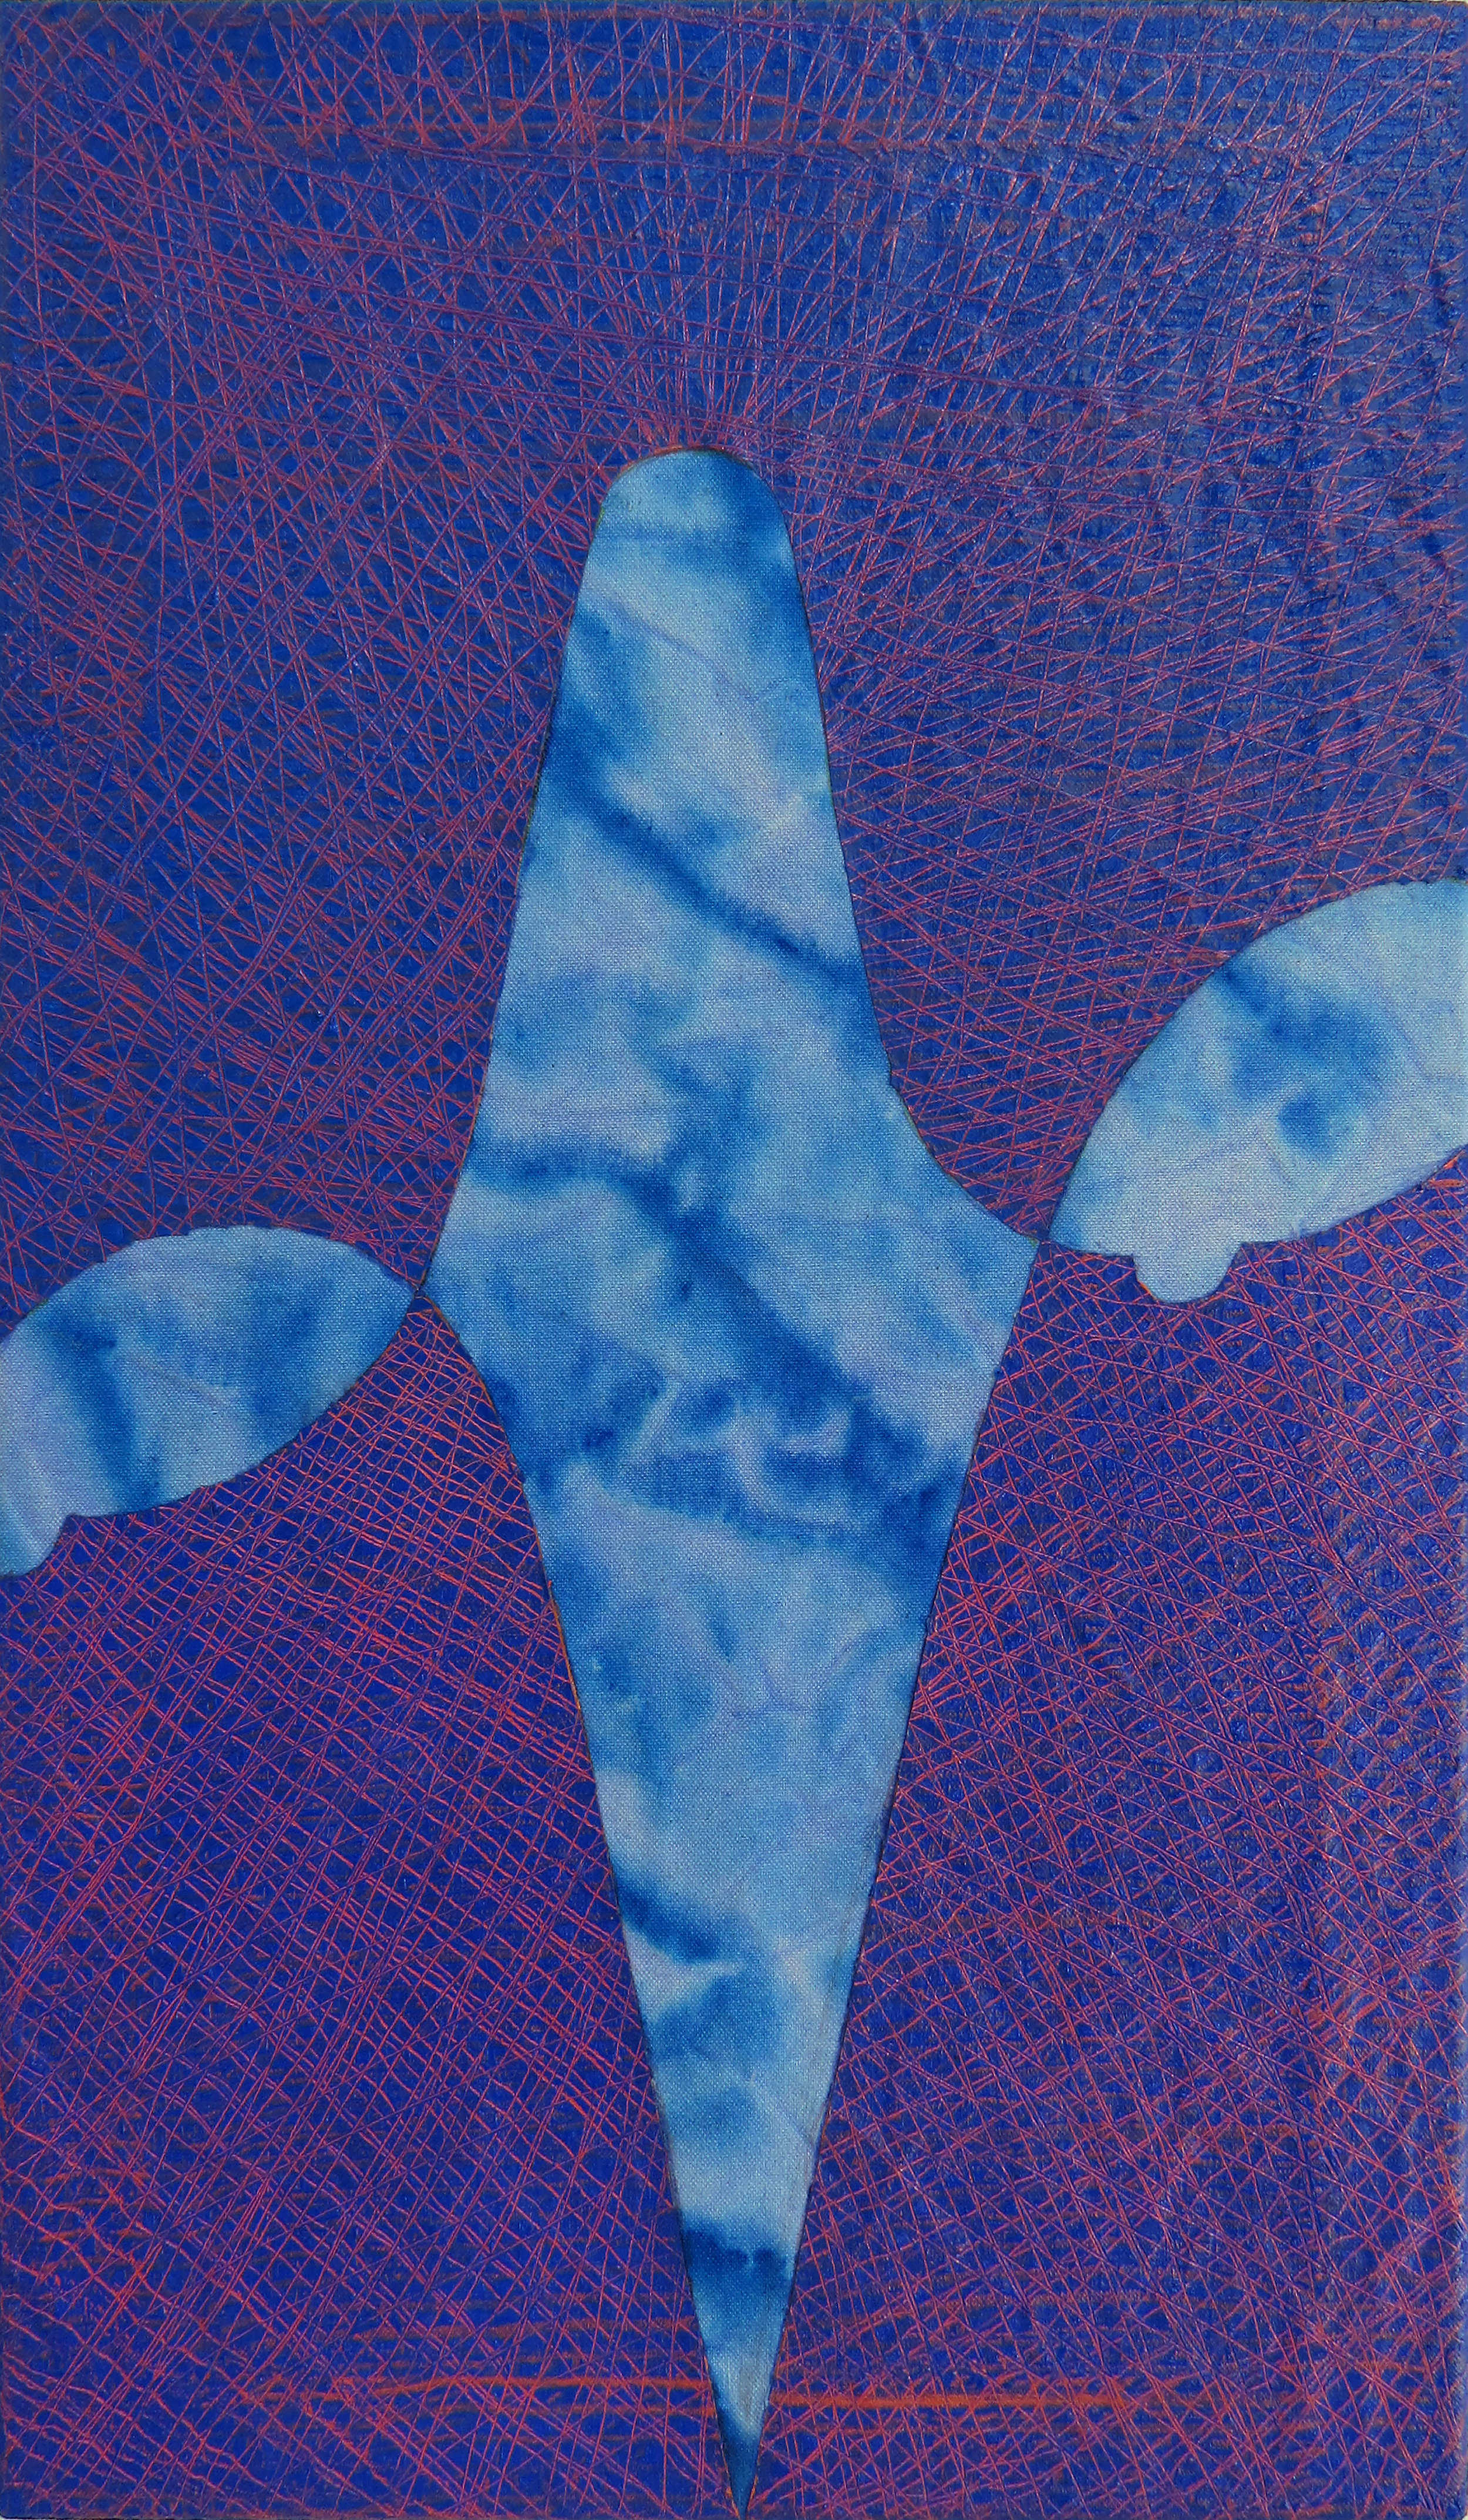   Sag   24x14”, acrylic and oil on canvas, 2018 